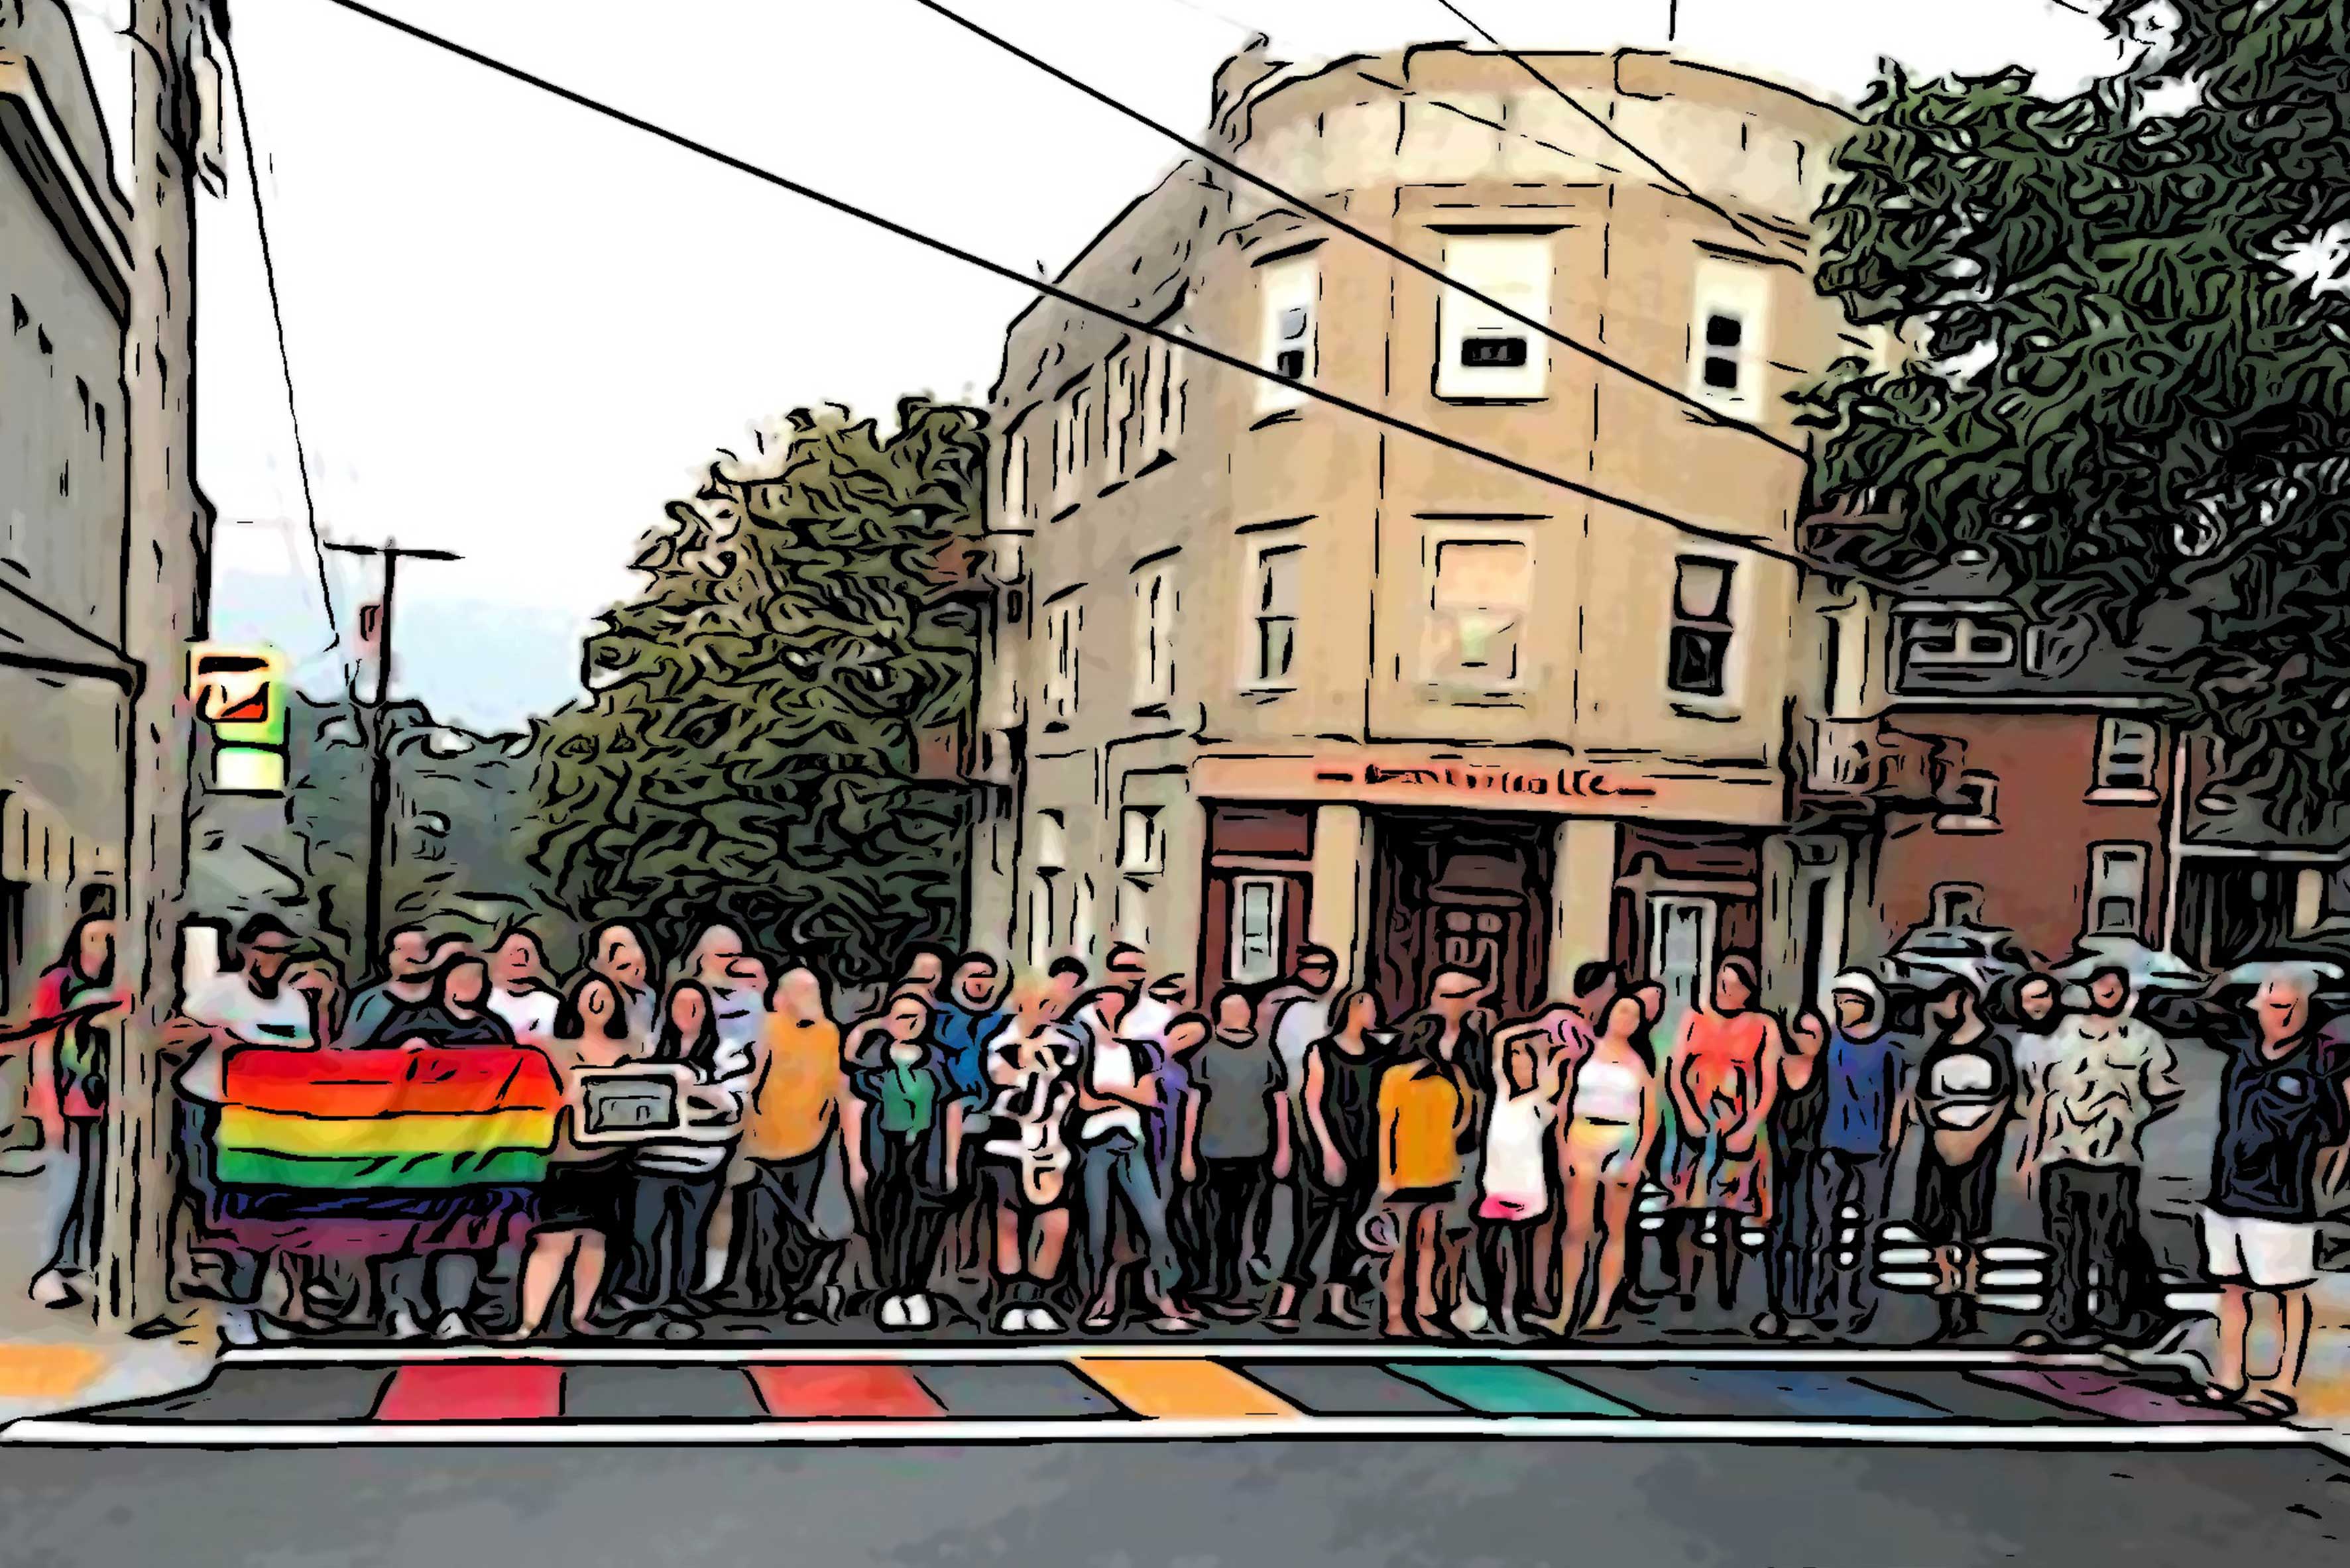 pride crosswalk